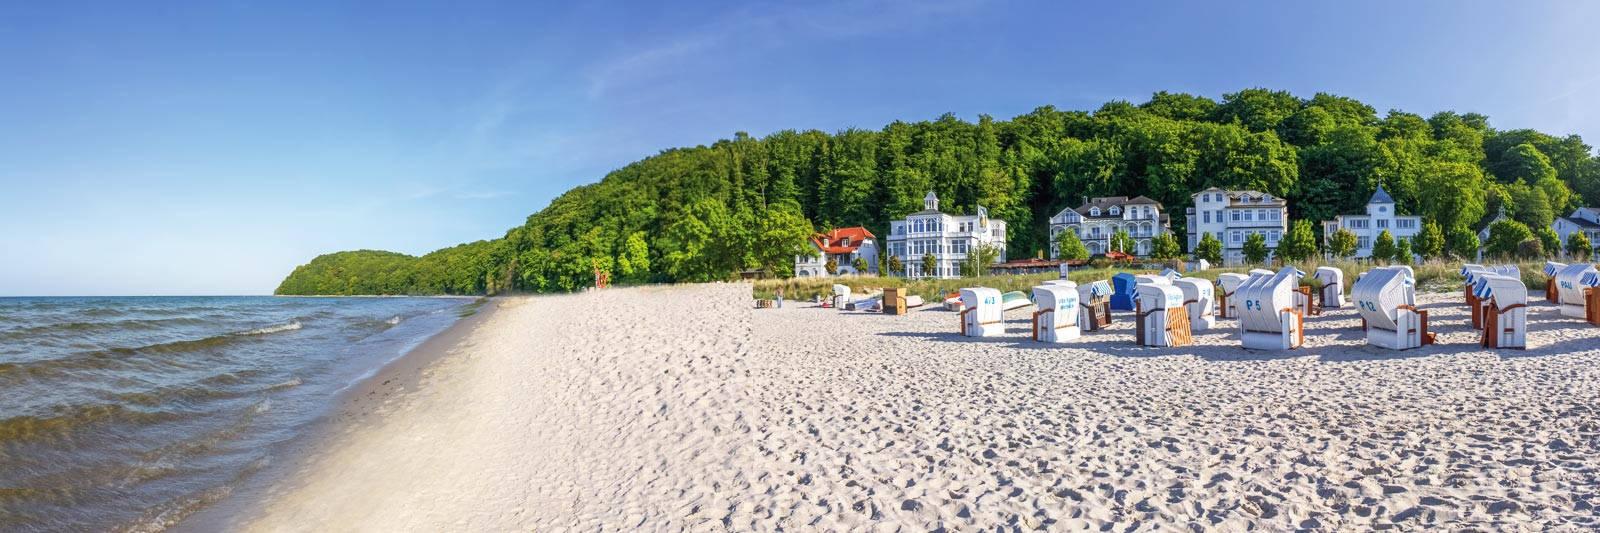 38 Ferienwohnungen und Ferienhäuser in Klein Trebbow - tourist-online.de